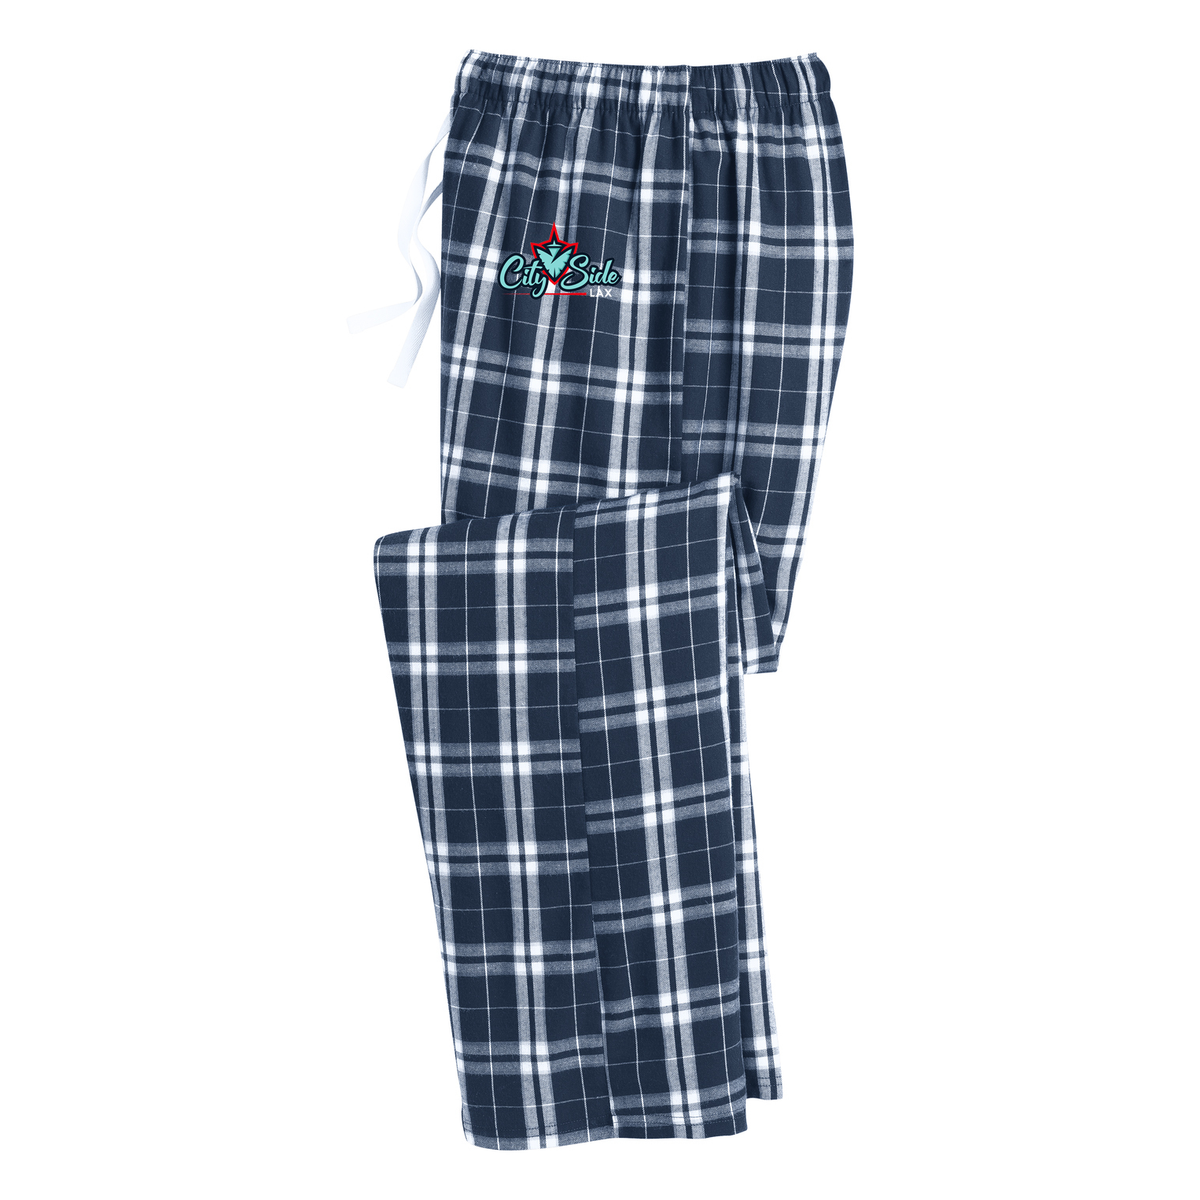 CitySide Lacrosse Plaid Pajama Pants